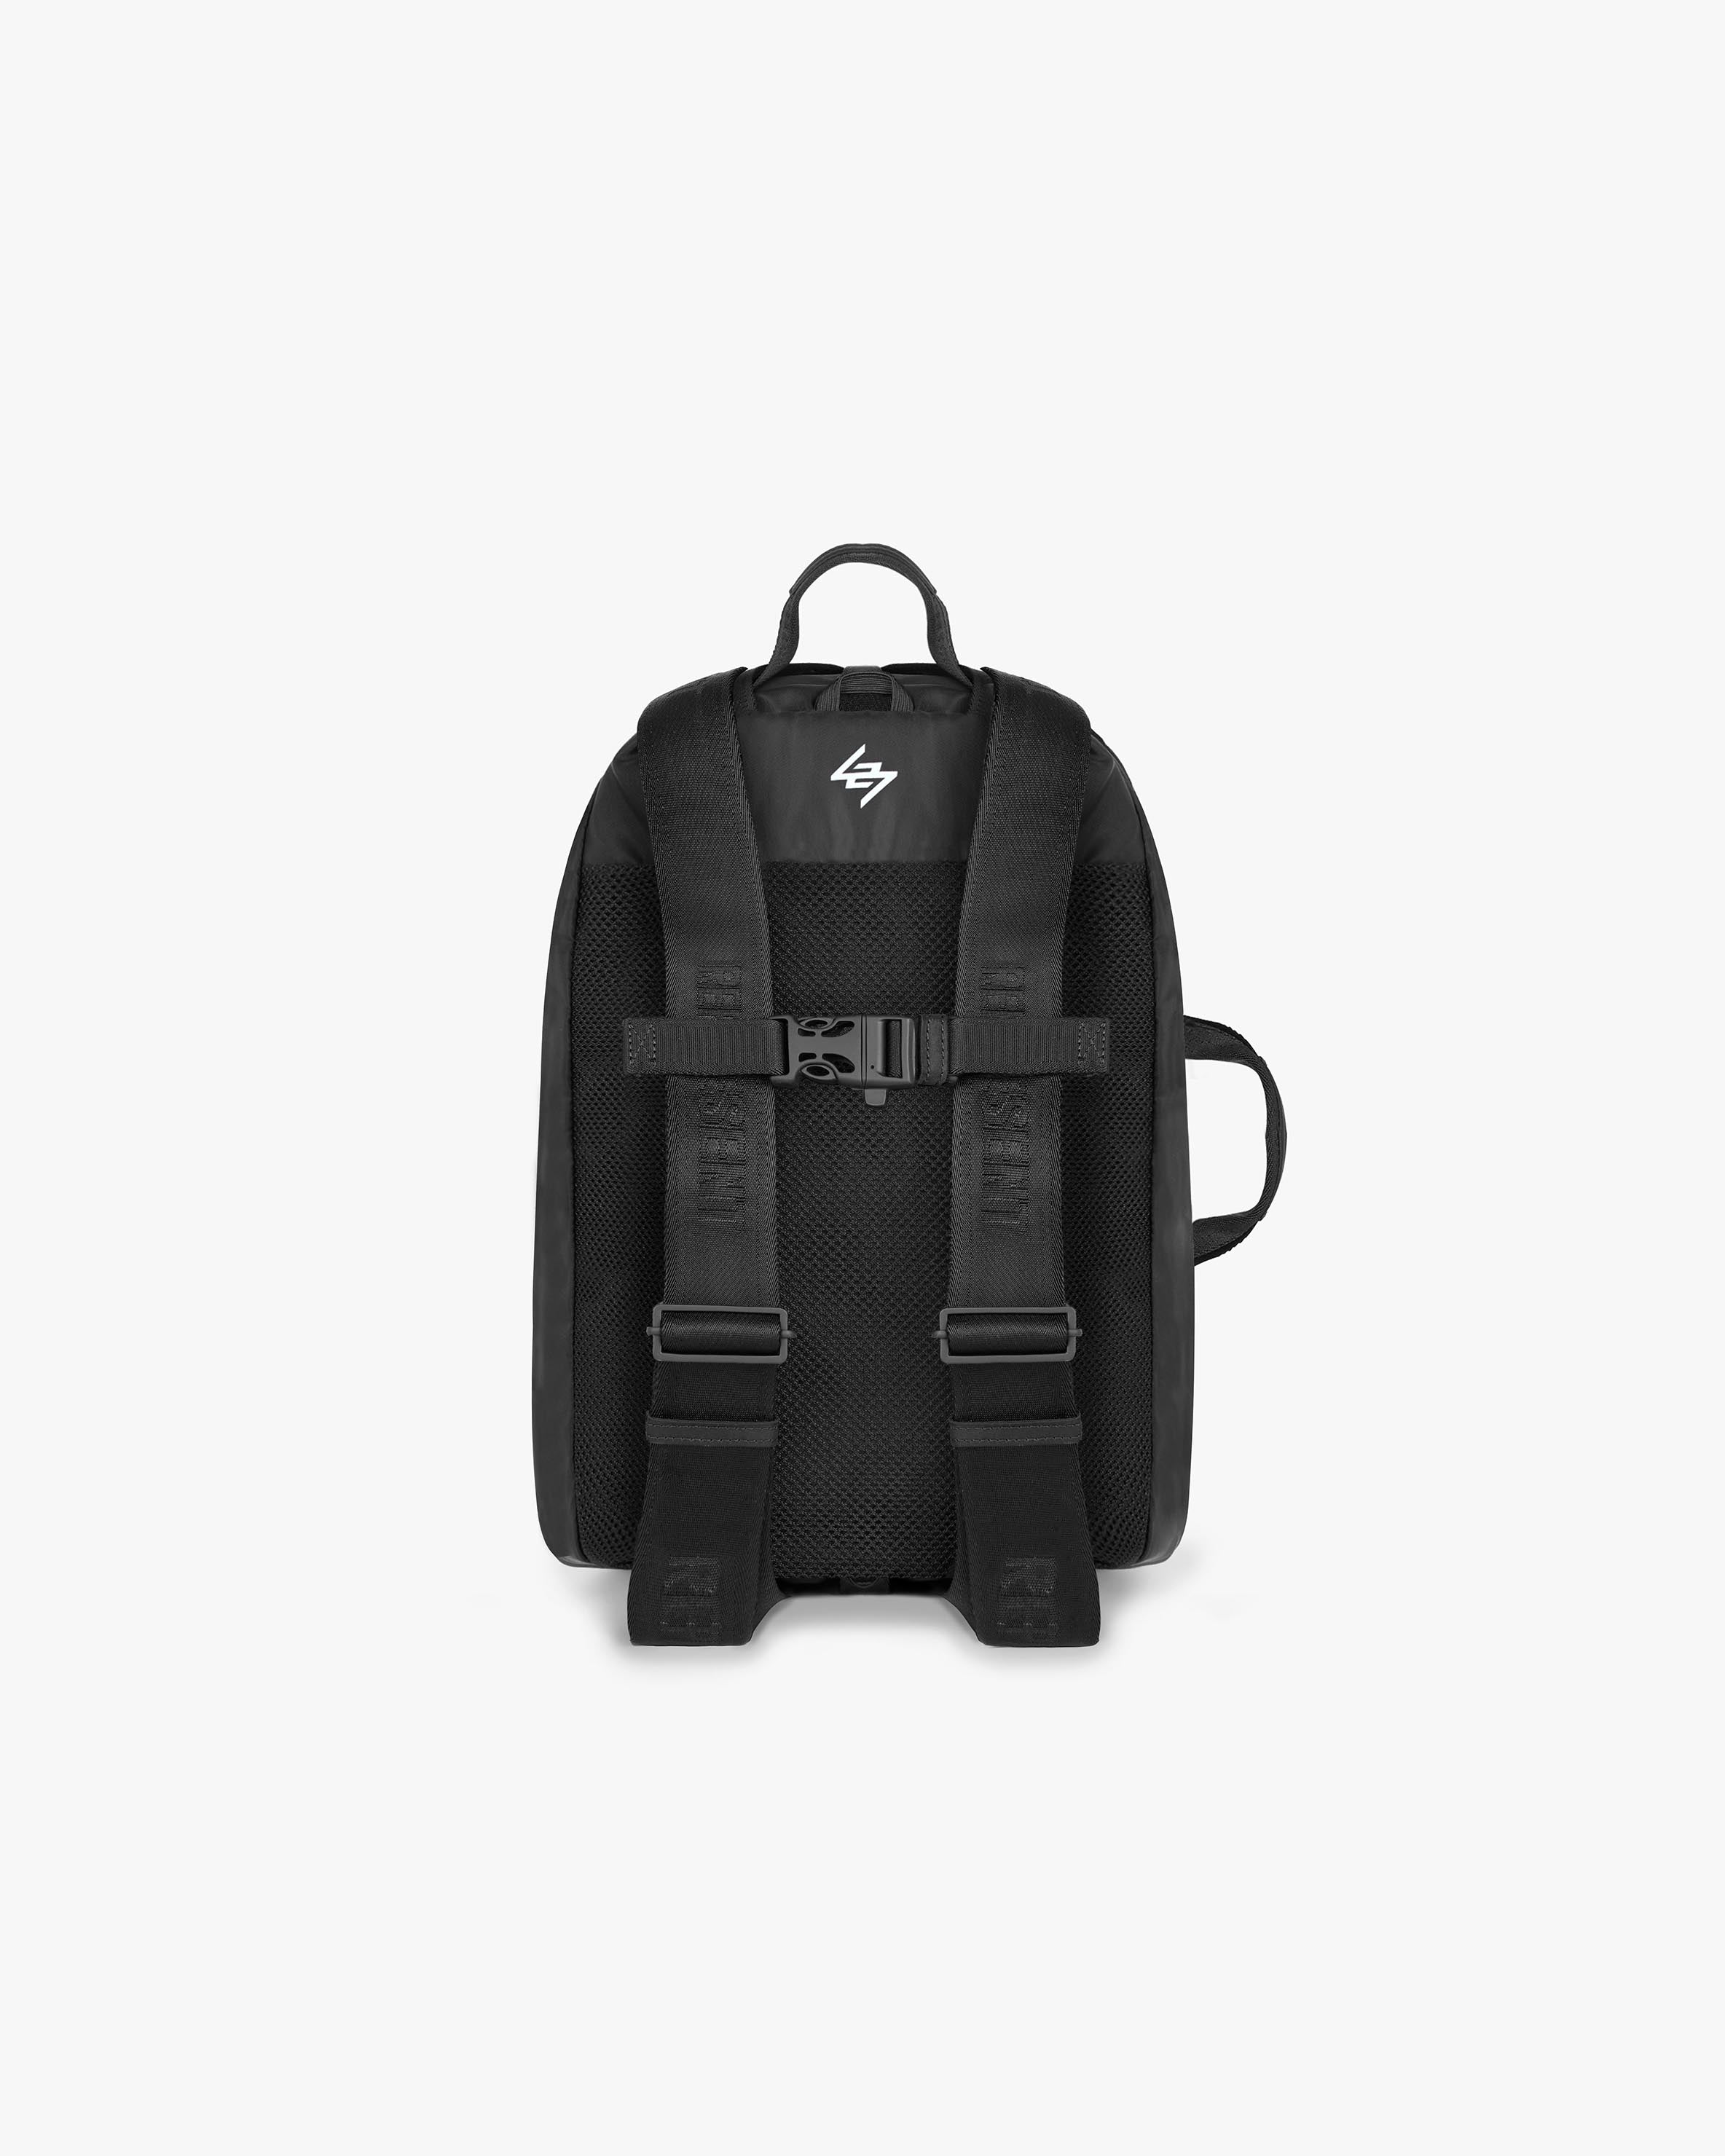 247 Backpack - Black